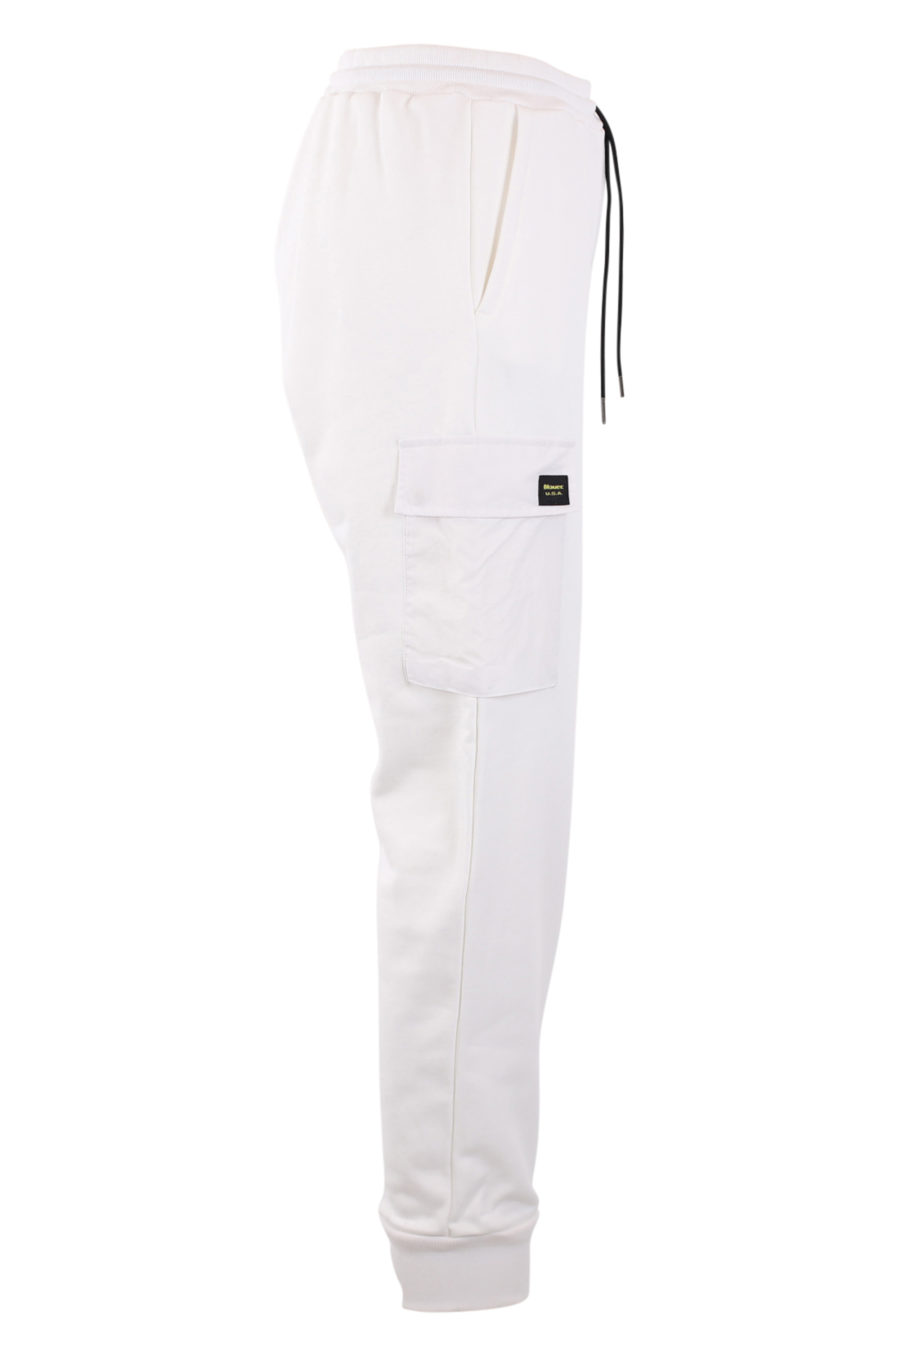 Pantalón de chándal blanco con bolsillos - IMG 0901